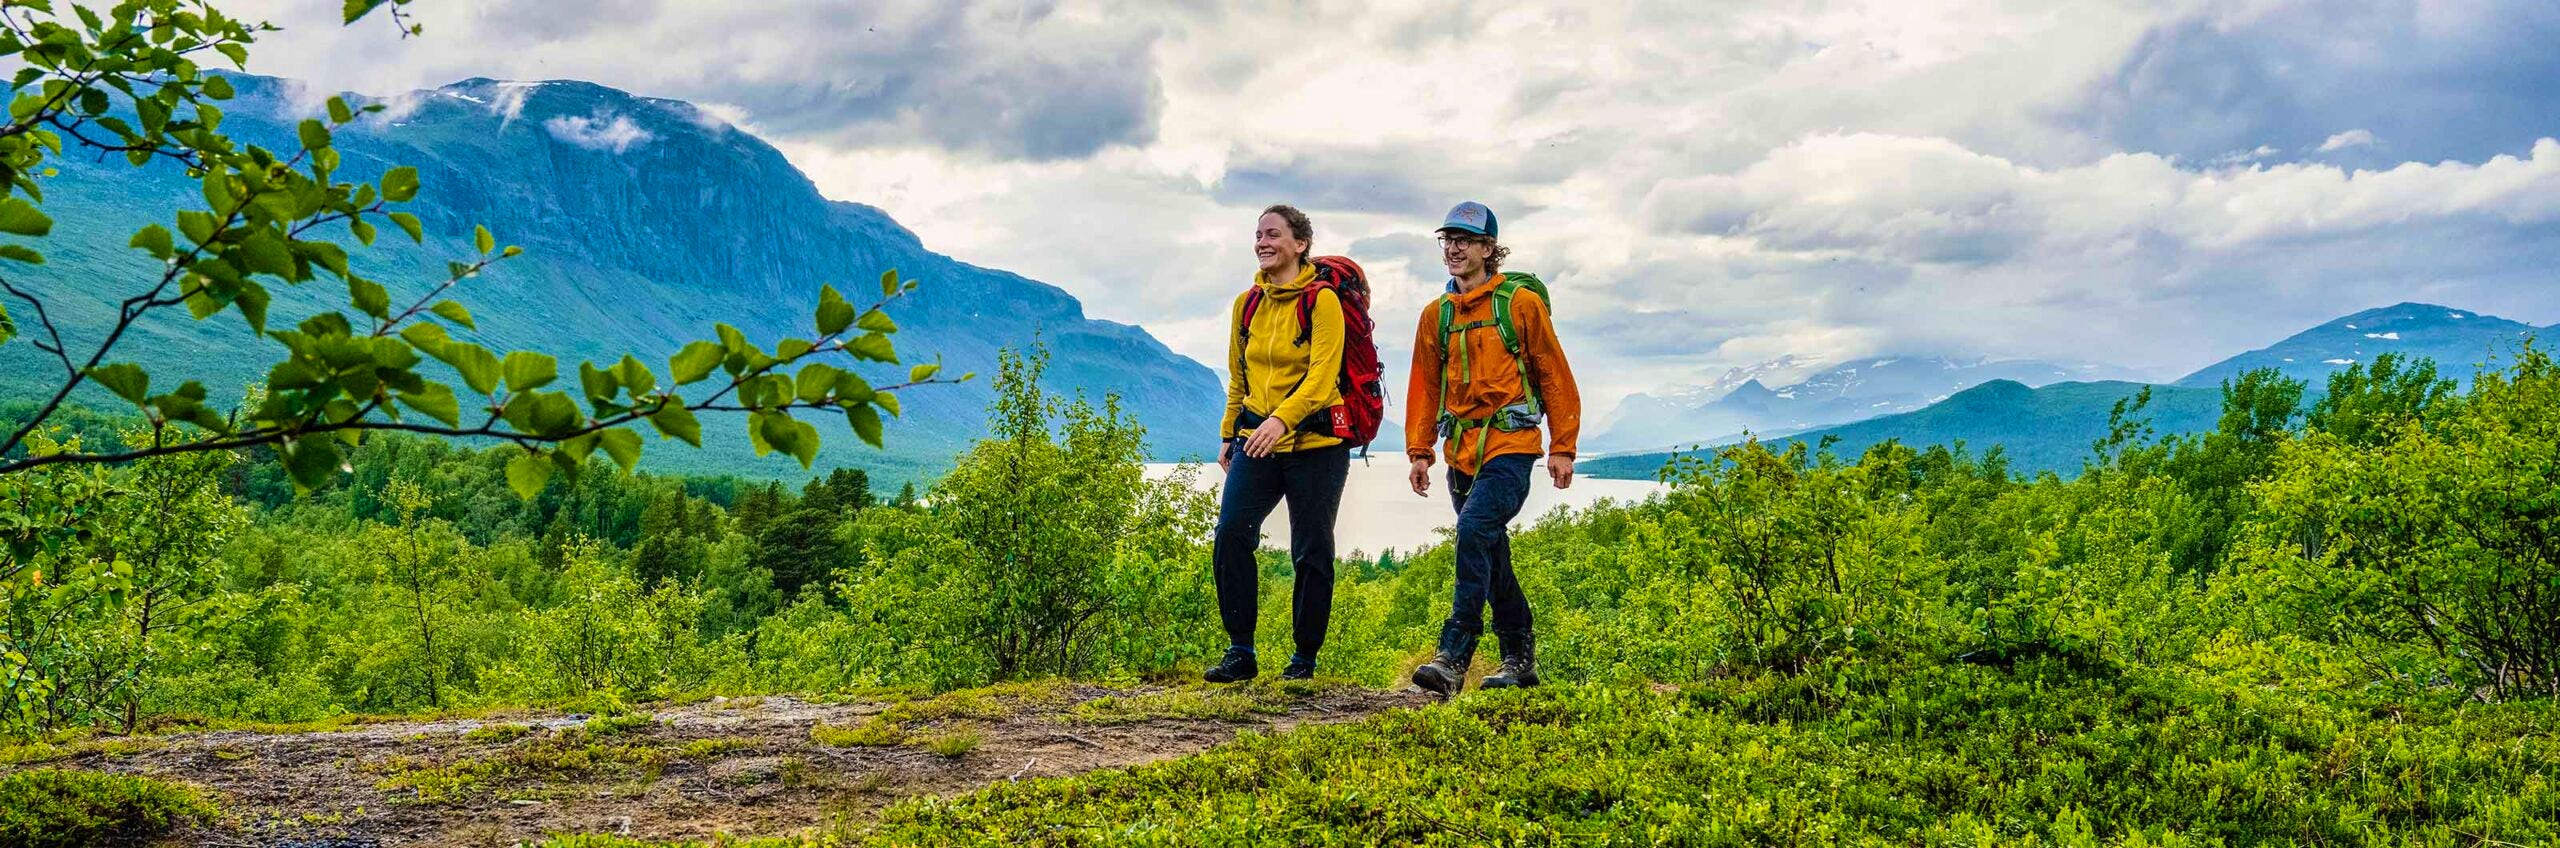 mountain tourism sweden